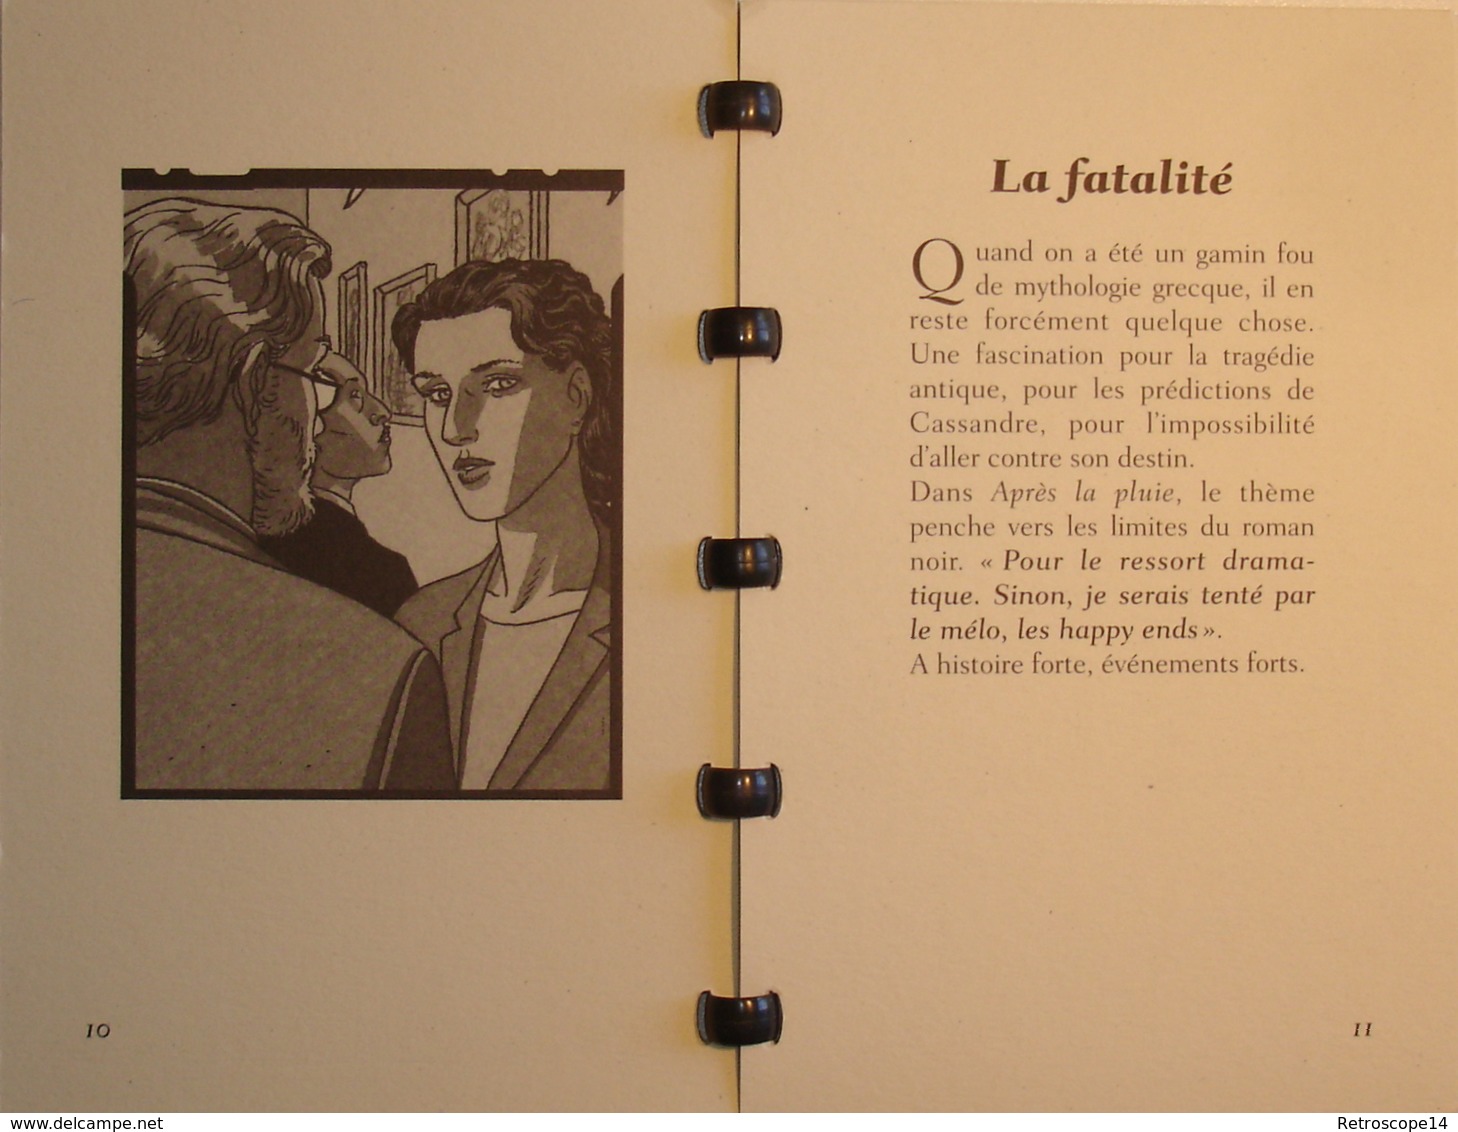 RARE. ANDRÉ JUILLARD. Dossier De Press APRÈS LA PLUIE, Casterman, 1998. - Persboek